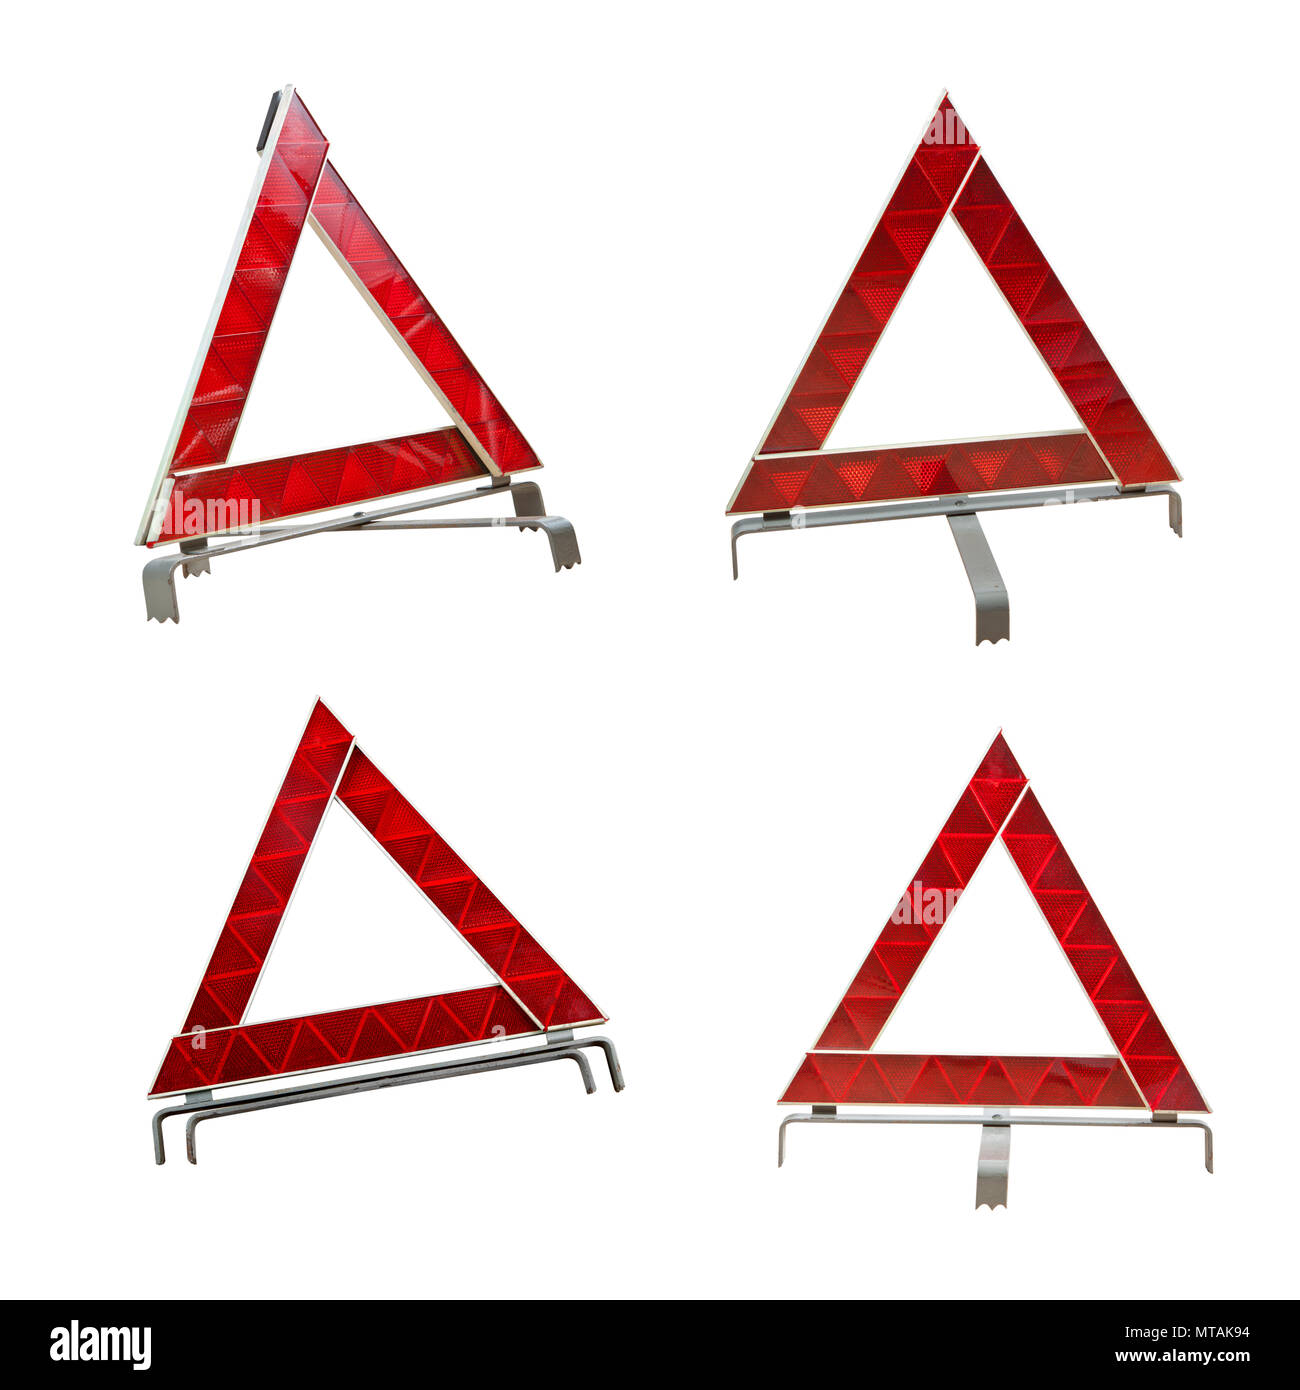 Set of car emergency sign isolated on white background Stock Photo